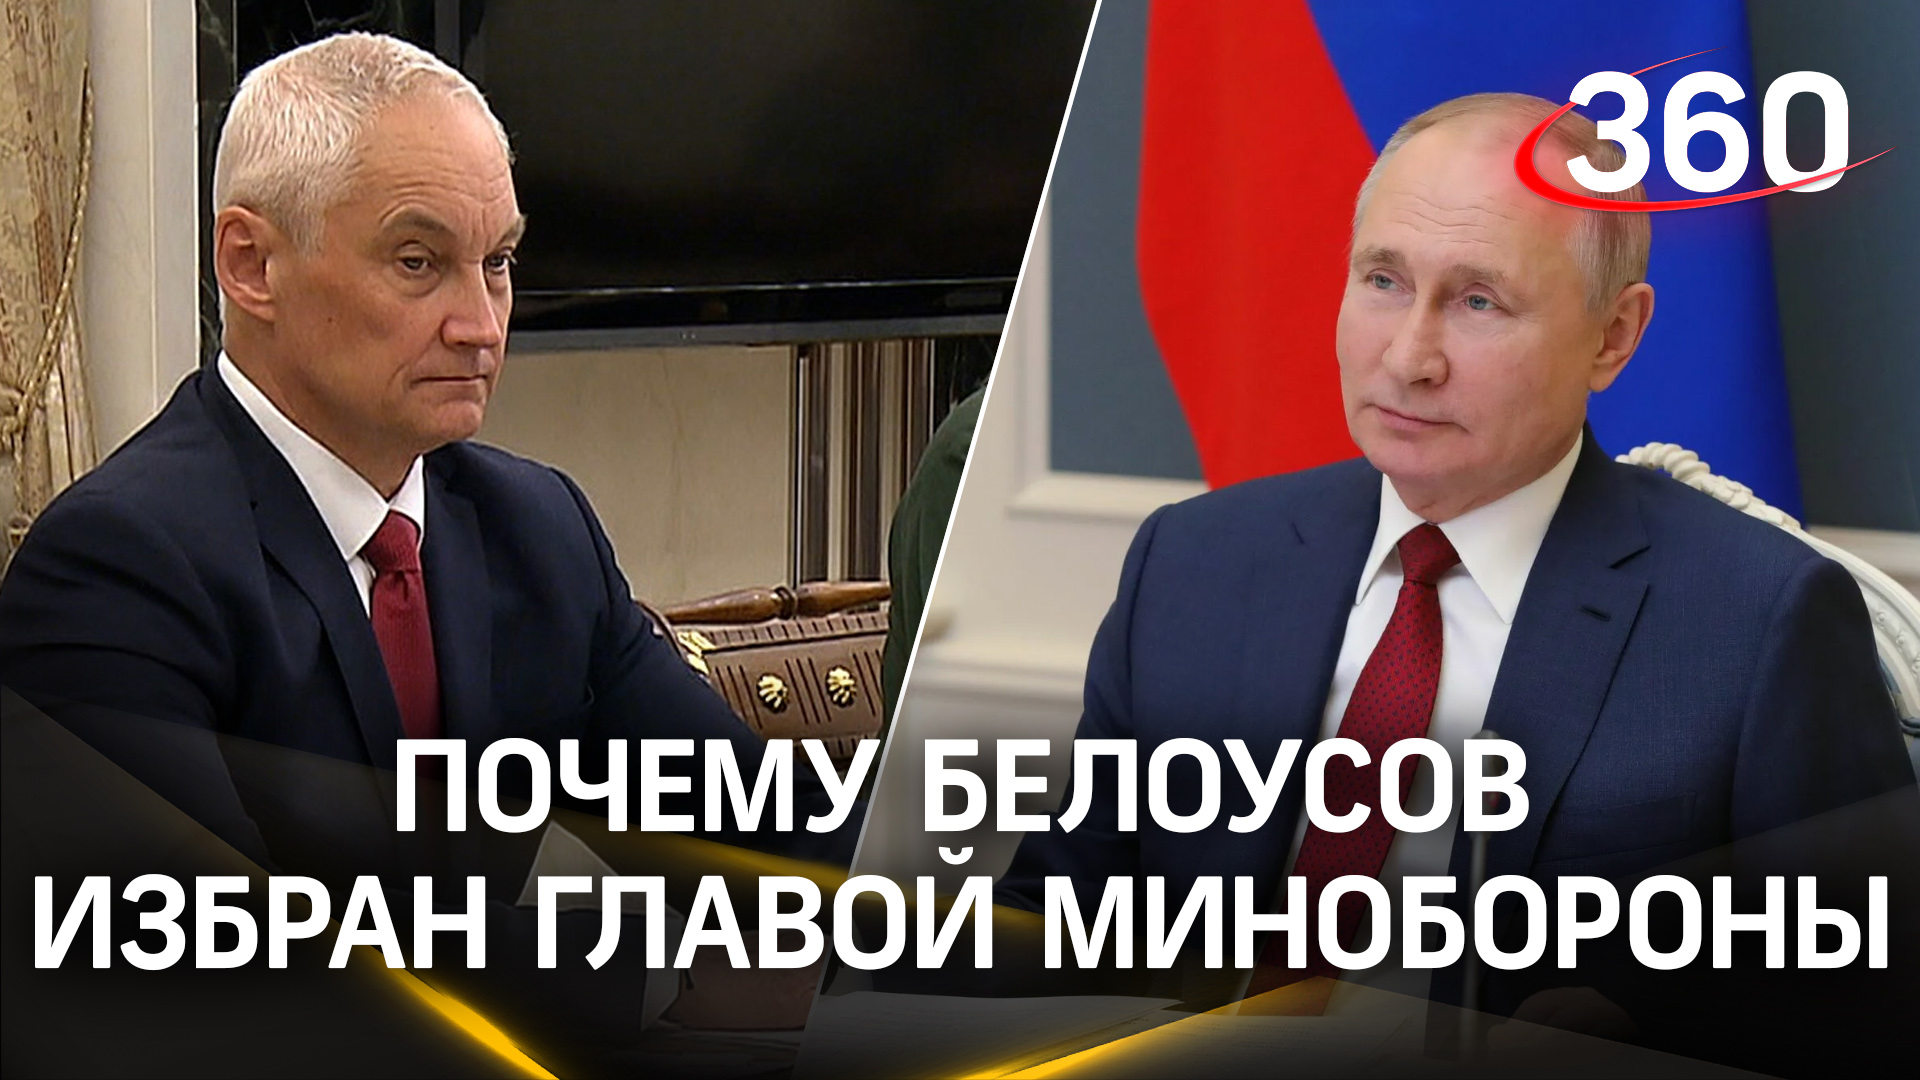 Путин встретился с командующими округов и объяснил, почему главой Минобороны выбрал Белоусова